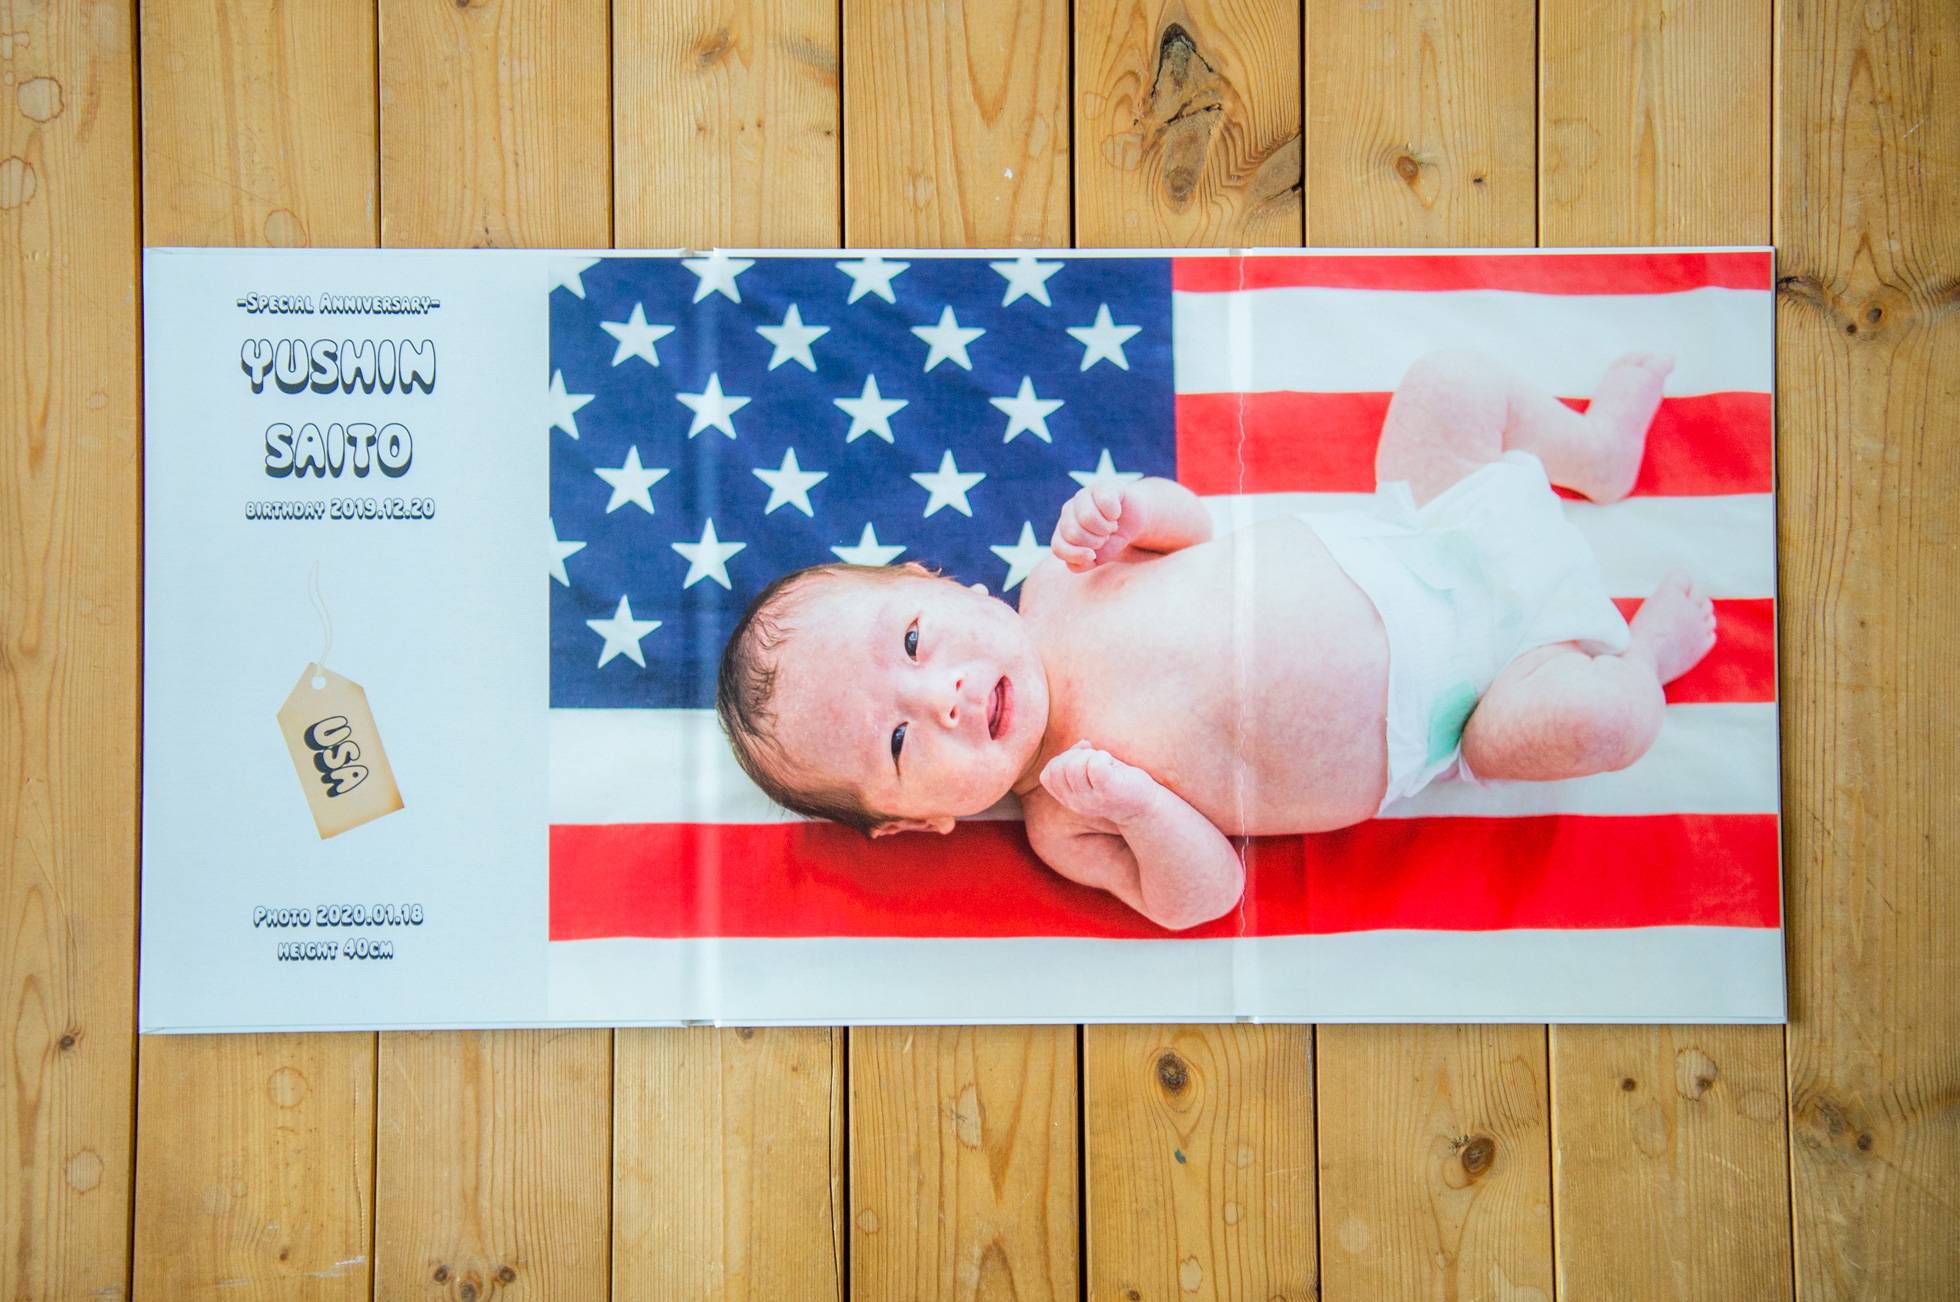 アメリカが好きなパパ・ママのアイデアで、アメリカ国旗を入れて撮影。